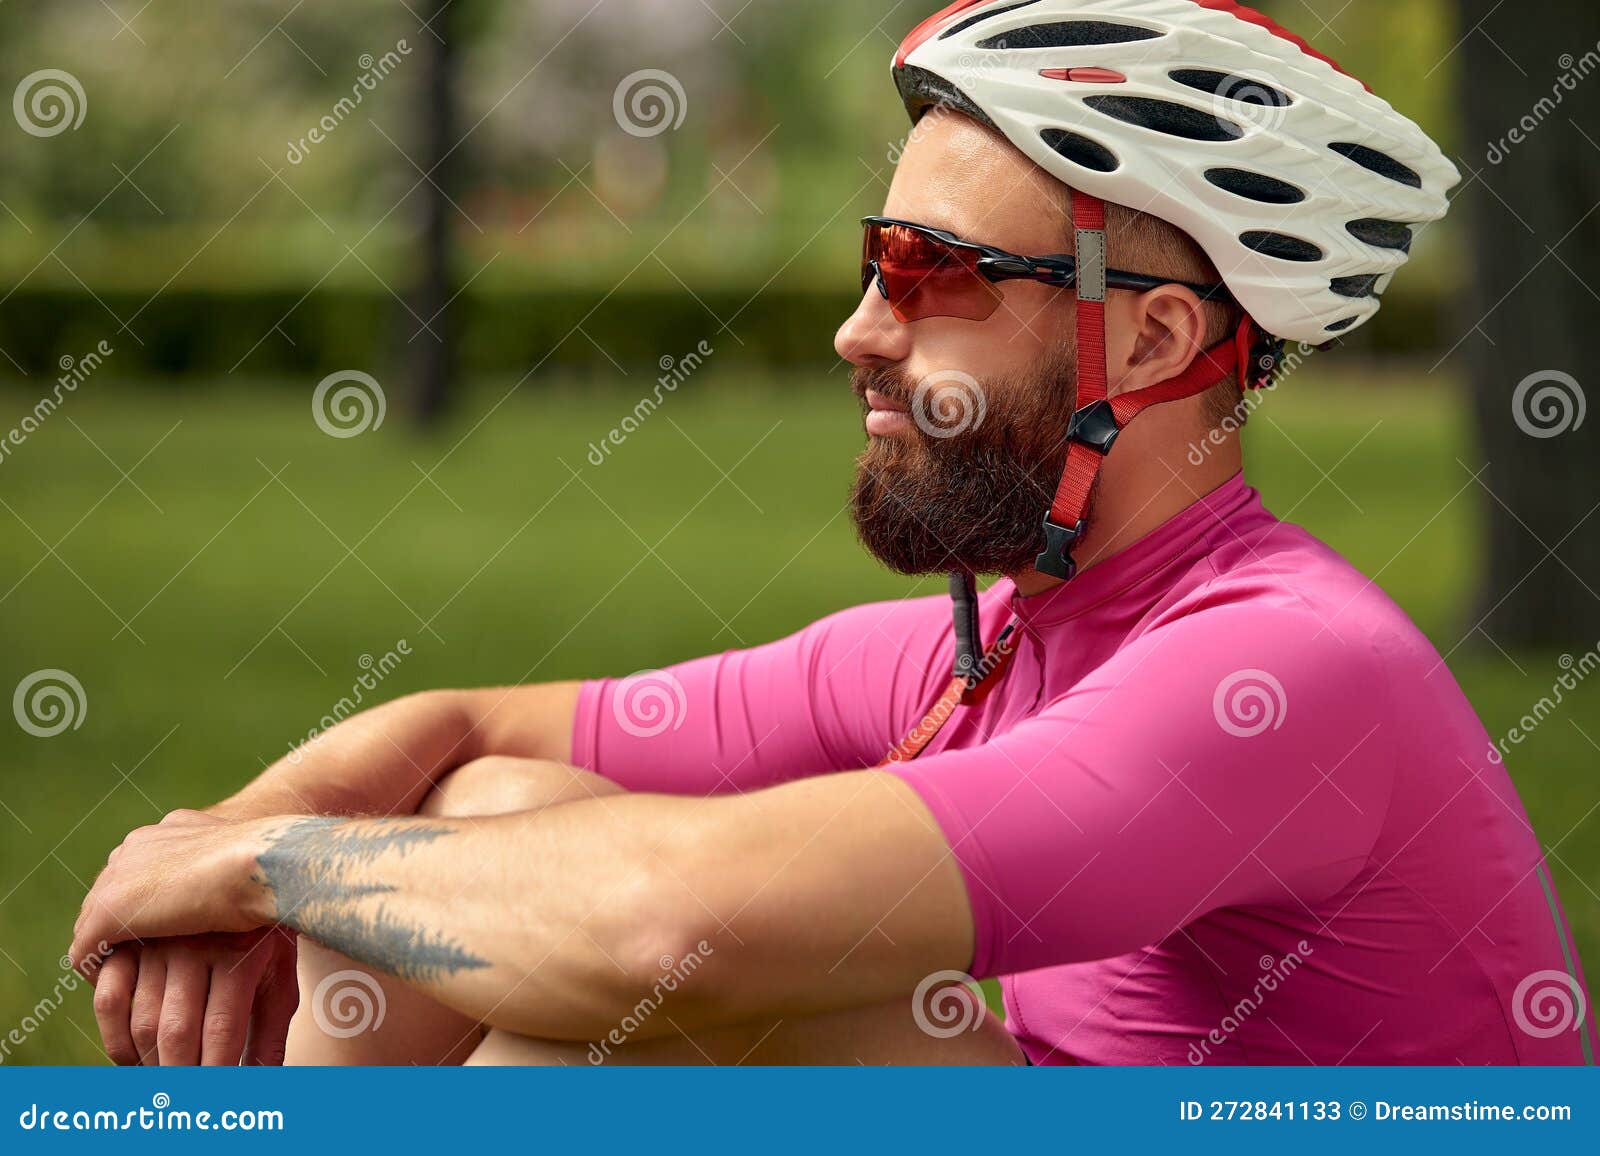 Portrait D'un Cycliste à L'arrière Du Ciel Un Homme En Costume Cycliste  Avec Lunettes Vélo Hobby Autour Image stock - Image du verticale,  ajustement: 272841133